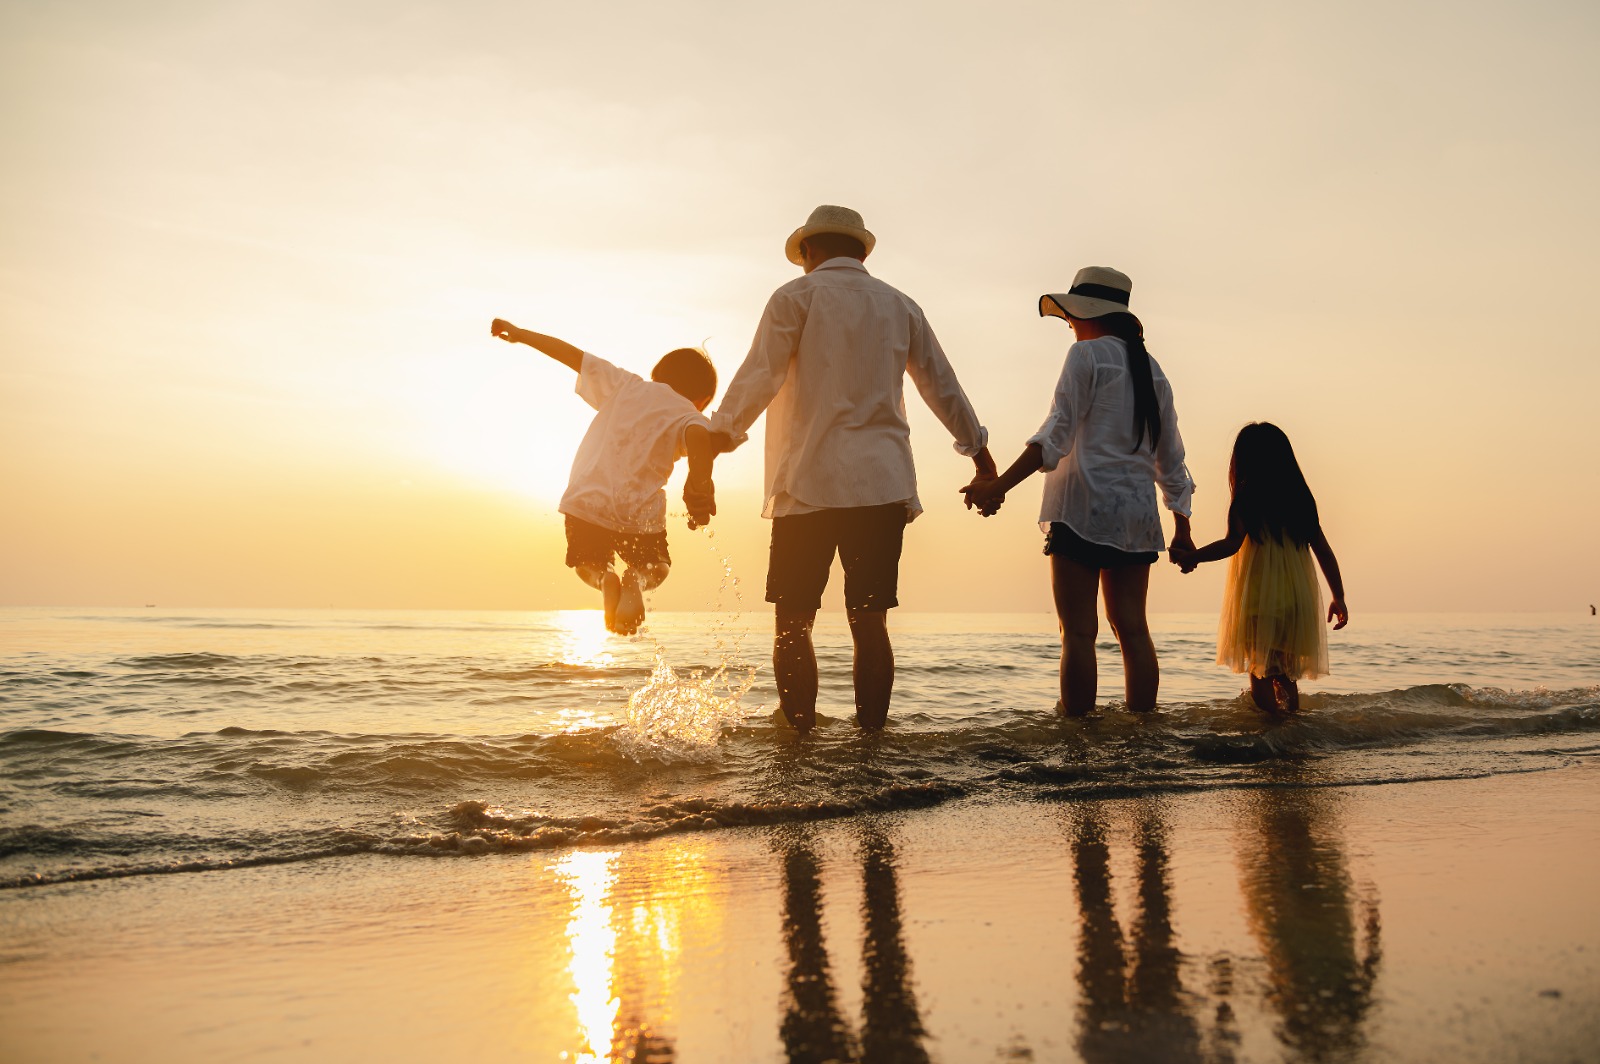 Durante el verano, las familias buscan las playas y parques acuáticos para disfrutar del calor. (Foto Prensa Libre: Shutterstock).